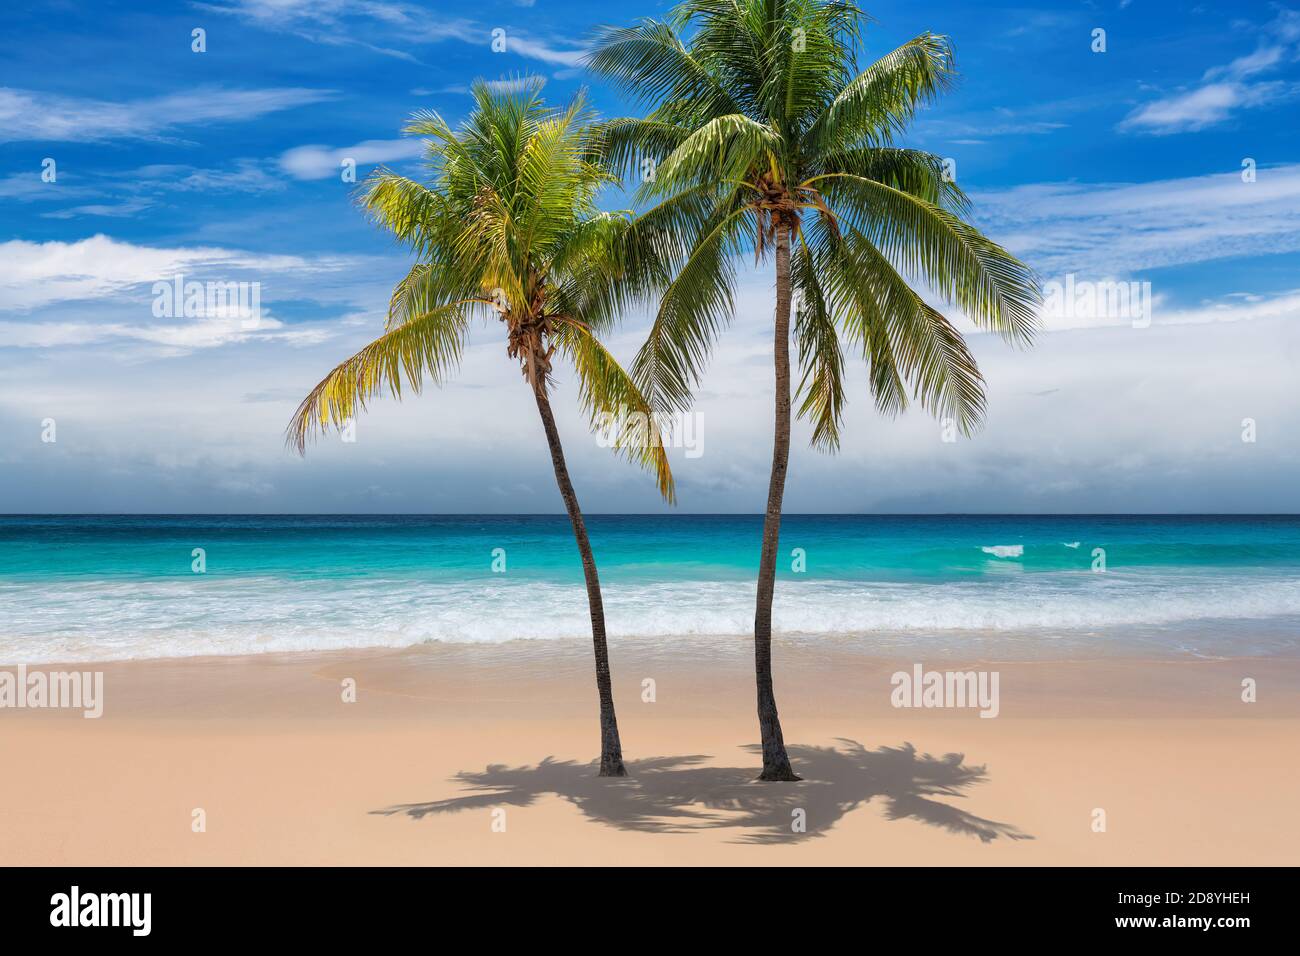 Spiaggia tropicale soleggiata con palme da cocco e il mare turchese sull'isola caraibica. Foto Stock